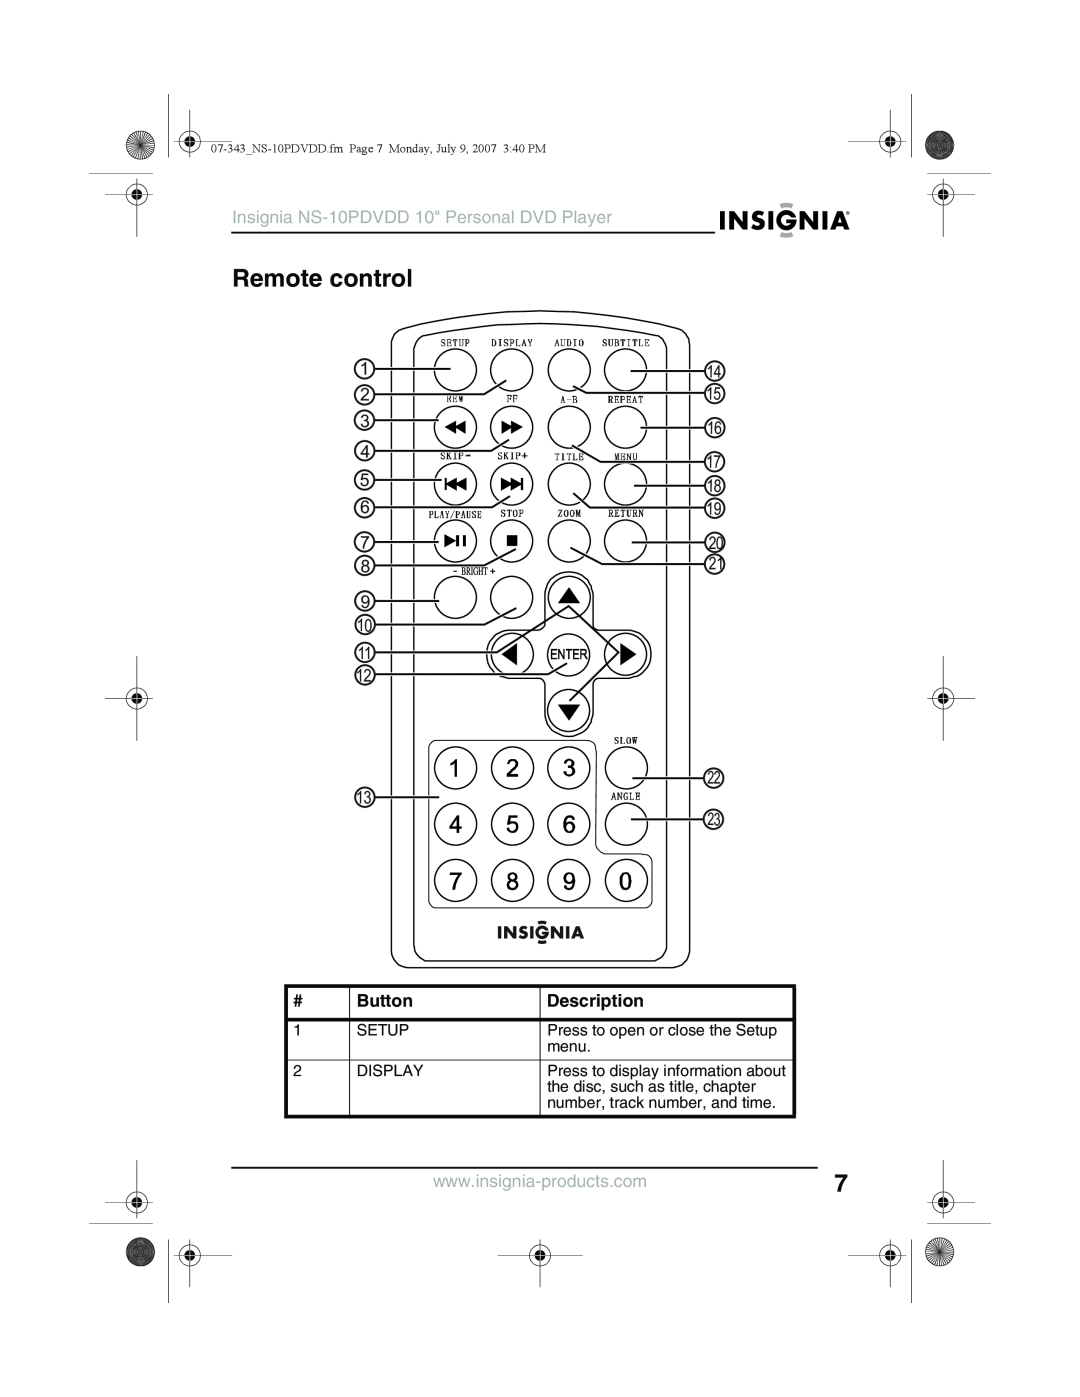 Insignia manual Remote control, 1 2 4 5, 17 18, Button, Insignia NS-10PDVDD 10 Personal DVD Player, Description 